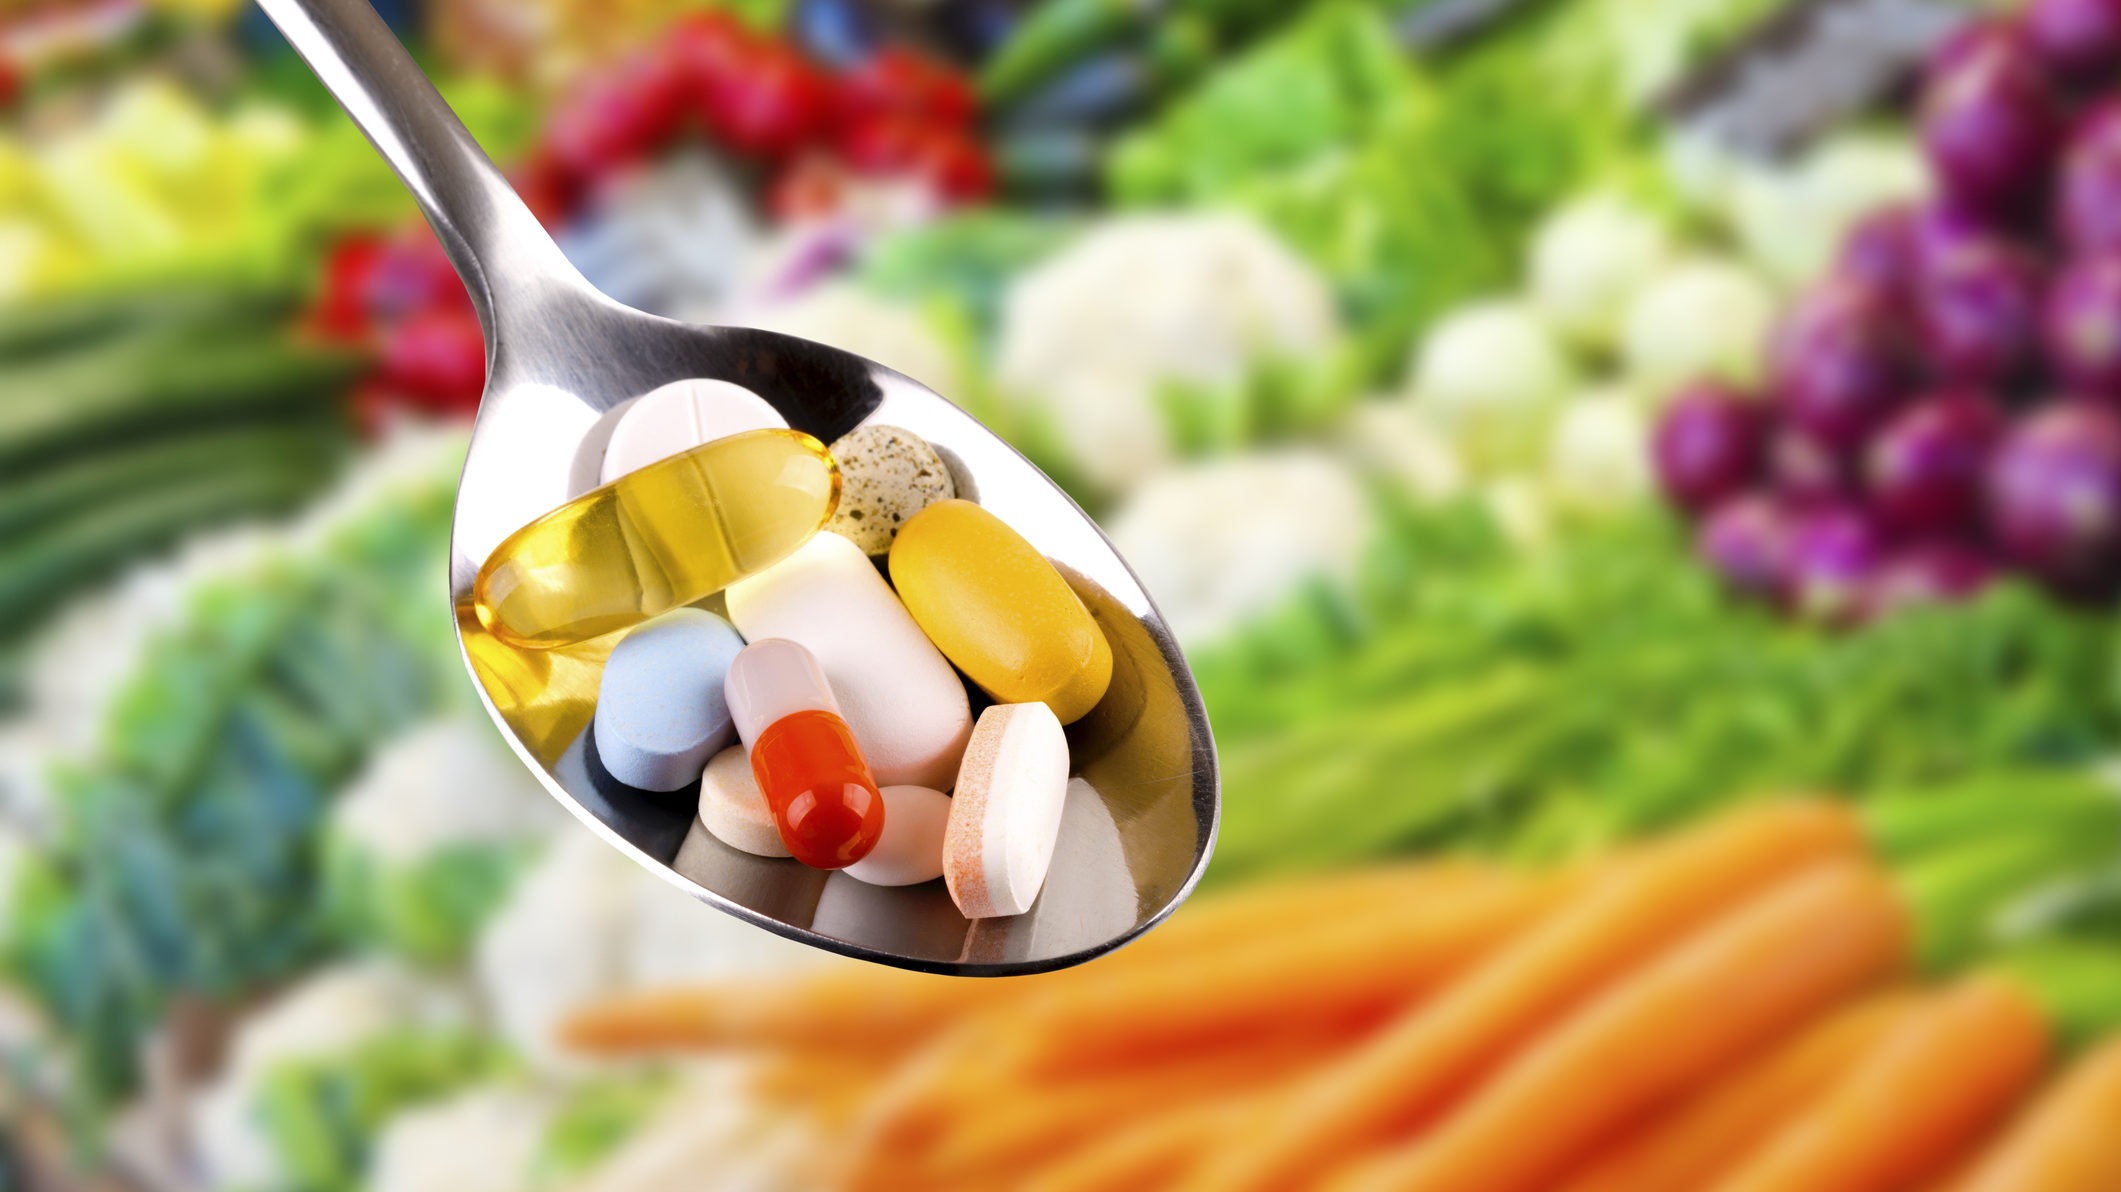 Care sunt avantajele suplimentelor cu vitamine?